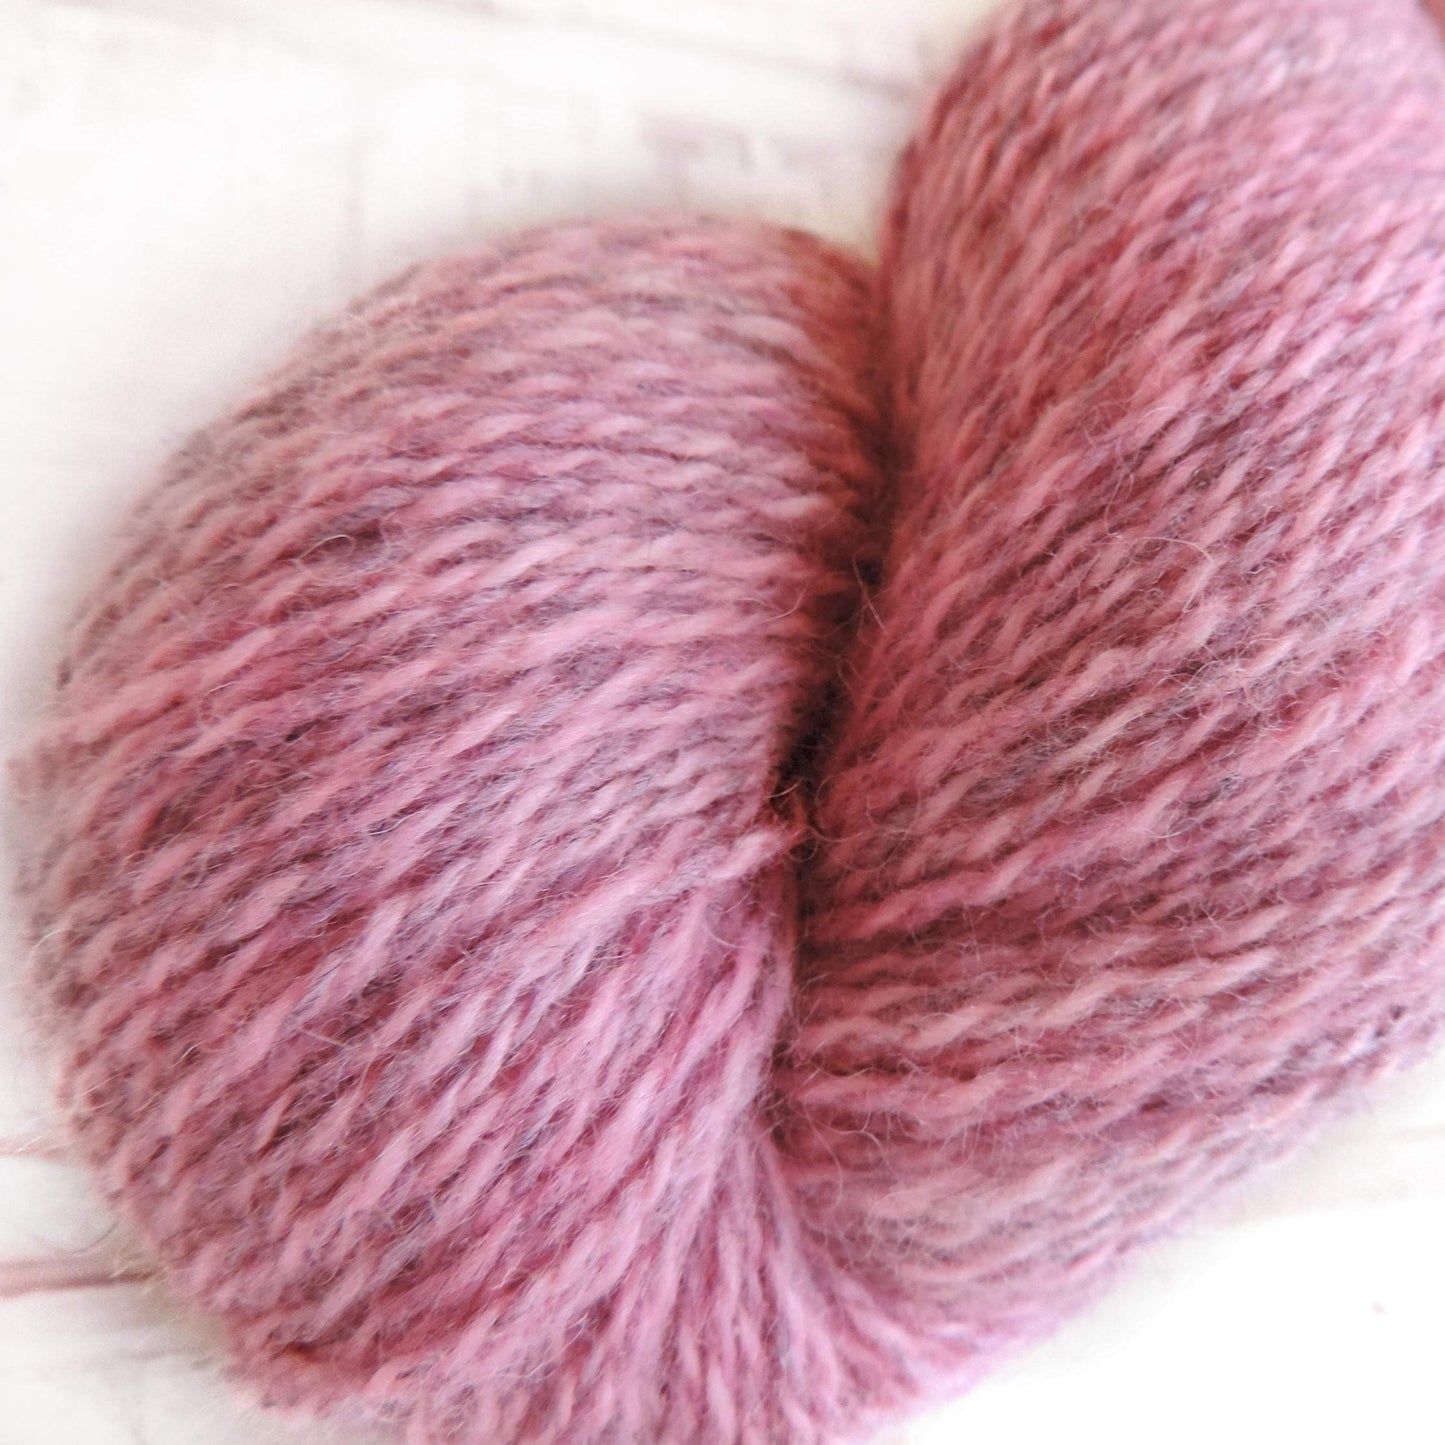 Pretty in Pink -Trollfjord Sock -  Hand Dyed Yarn - Marled yarn